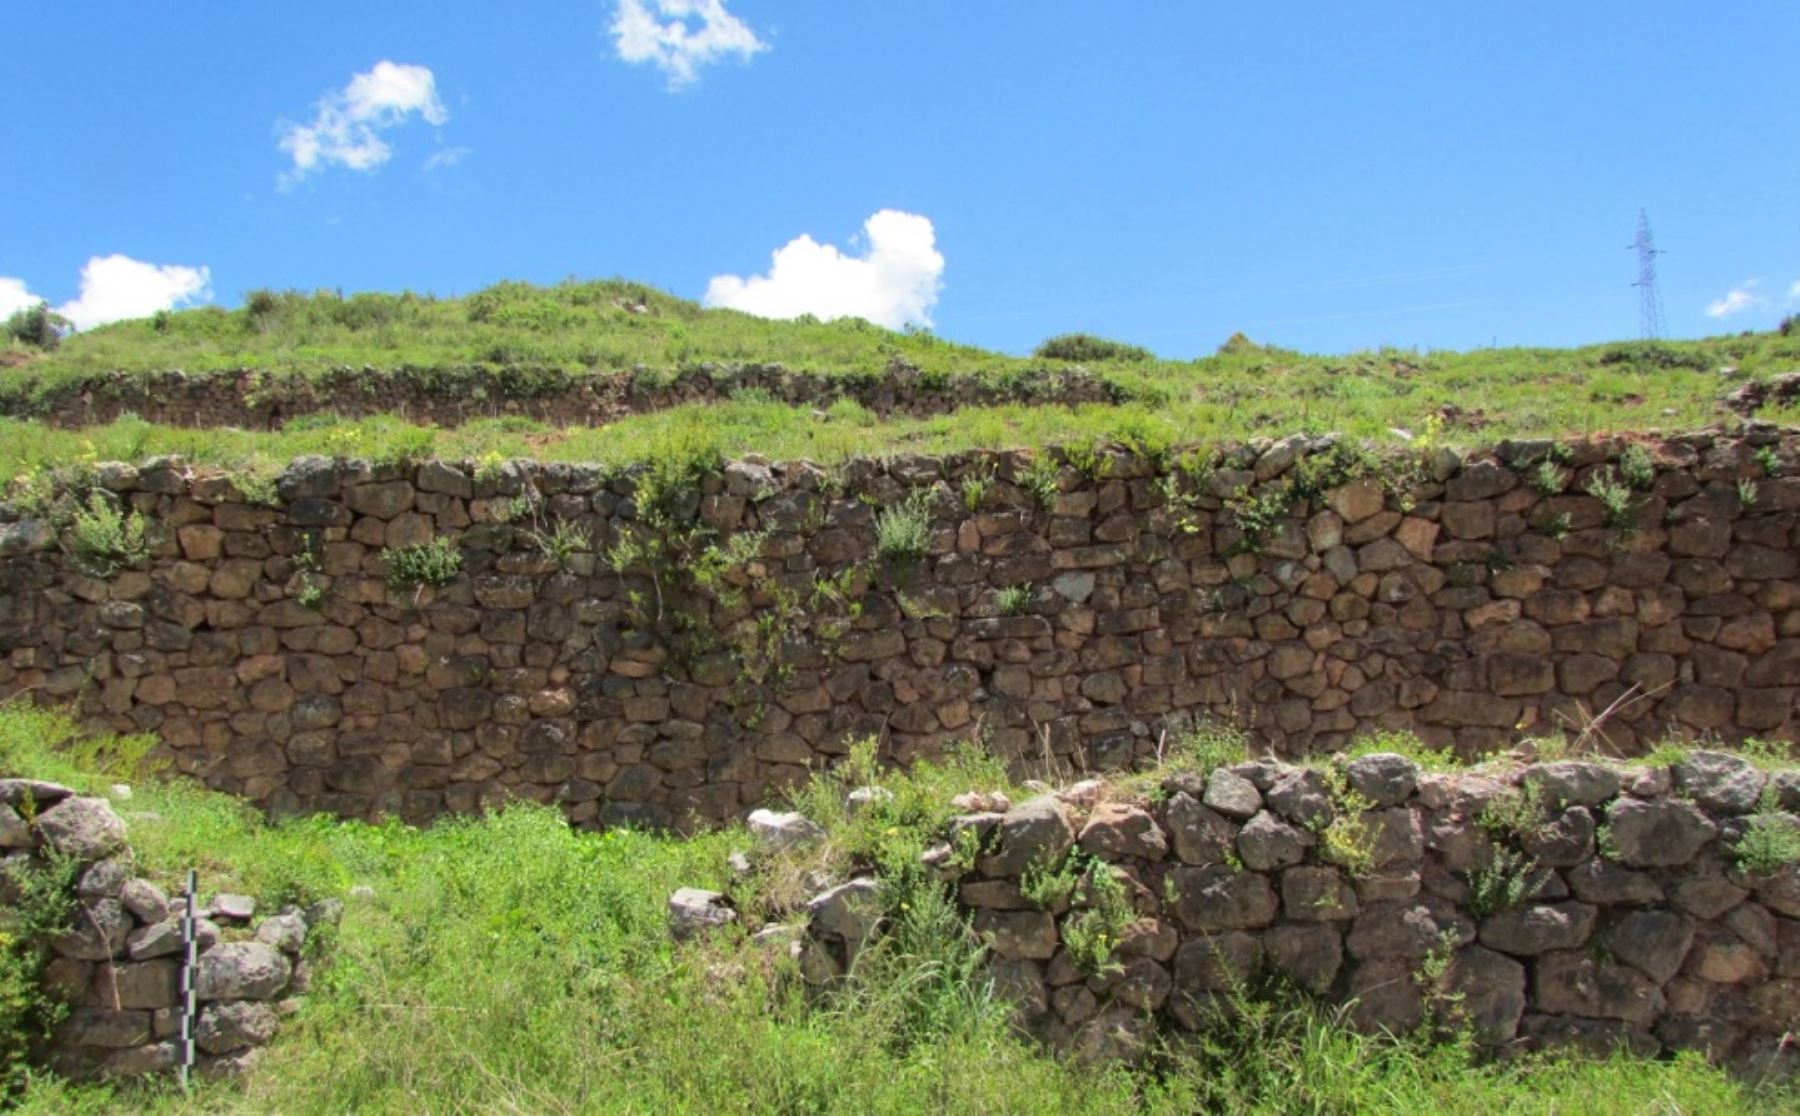 El Ministerio de Cultura declaró hoy como Patrimonio Cultural de la Nación al monumento arqueológico prehispánico “Waynaqolqa”, en la clasificación de "Paisaje Arqueológico", el cual se ubica en el distrito de Huayllabamba, provincia de Urubamba, en la región de Cusco.